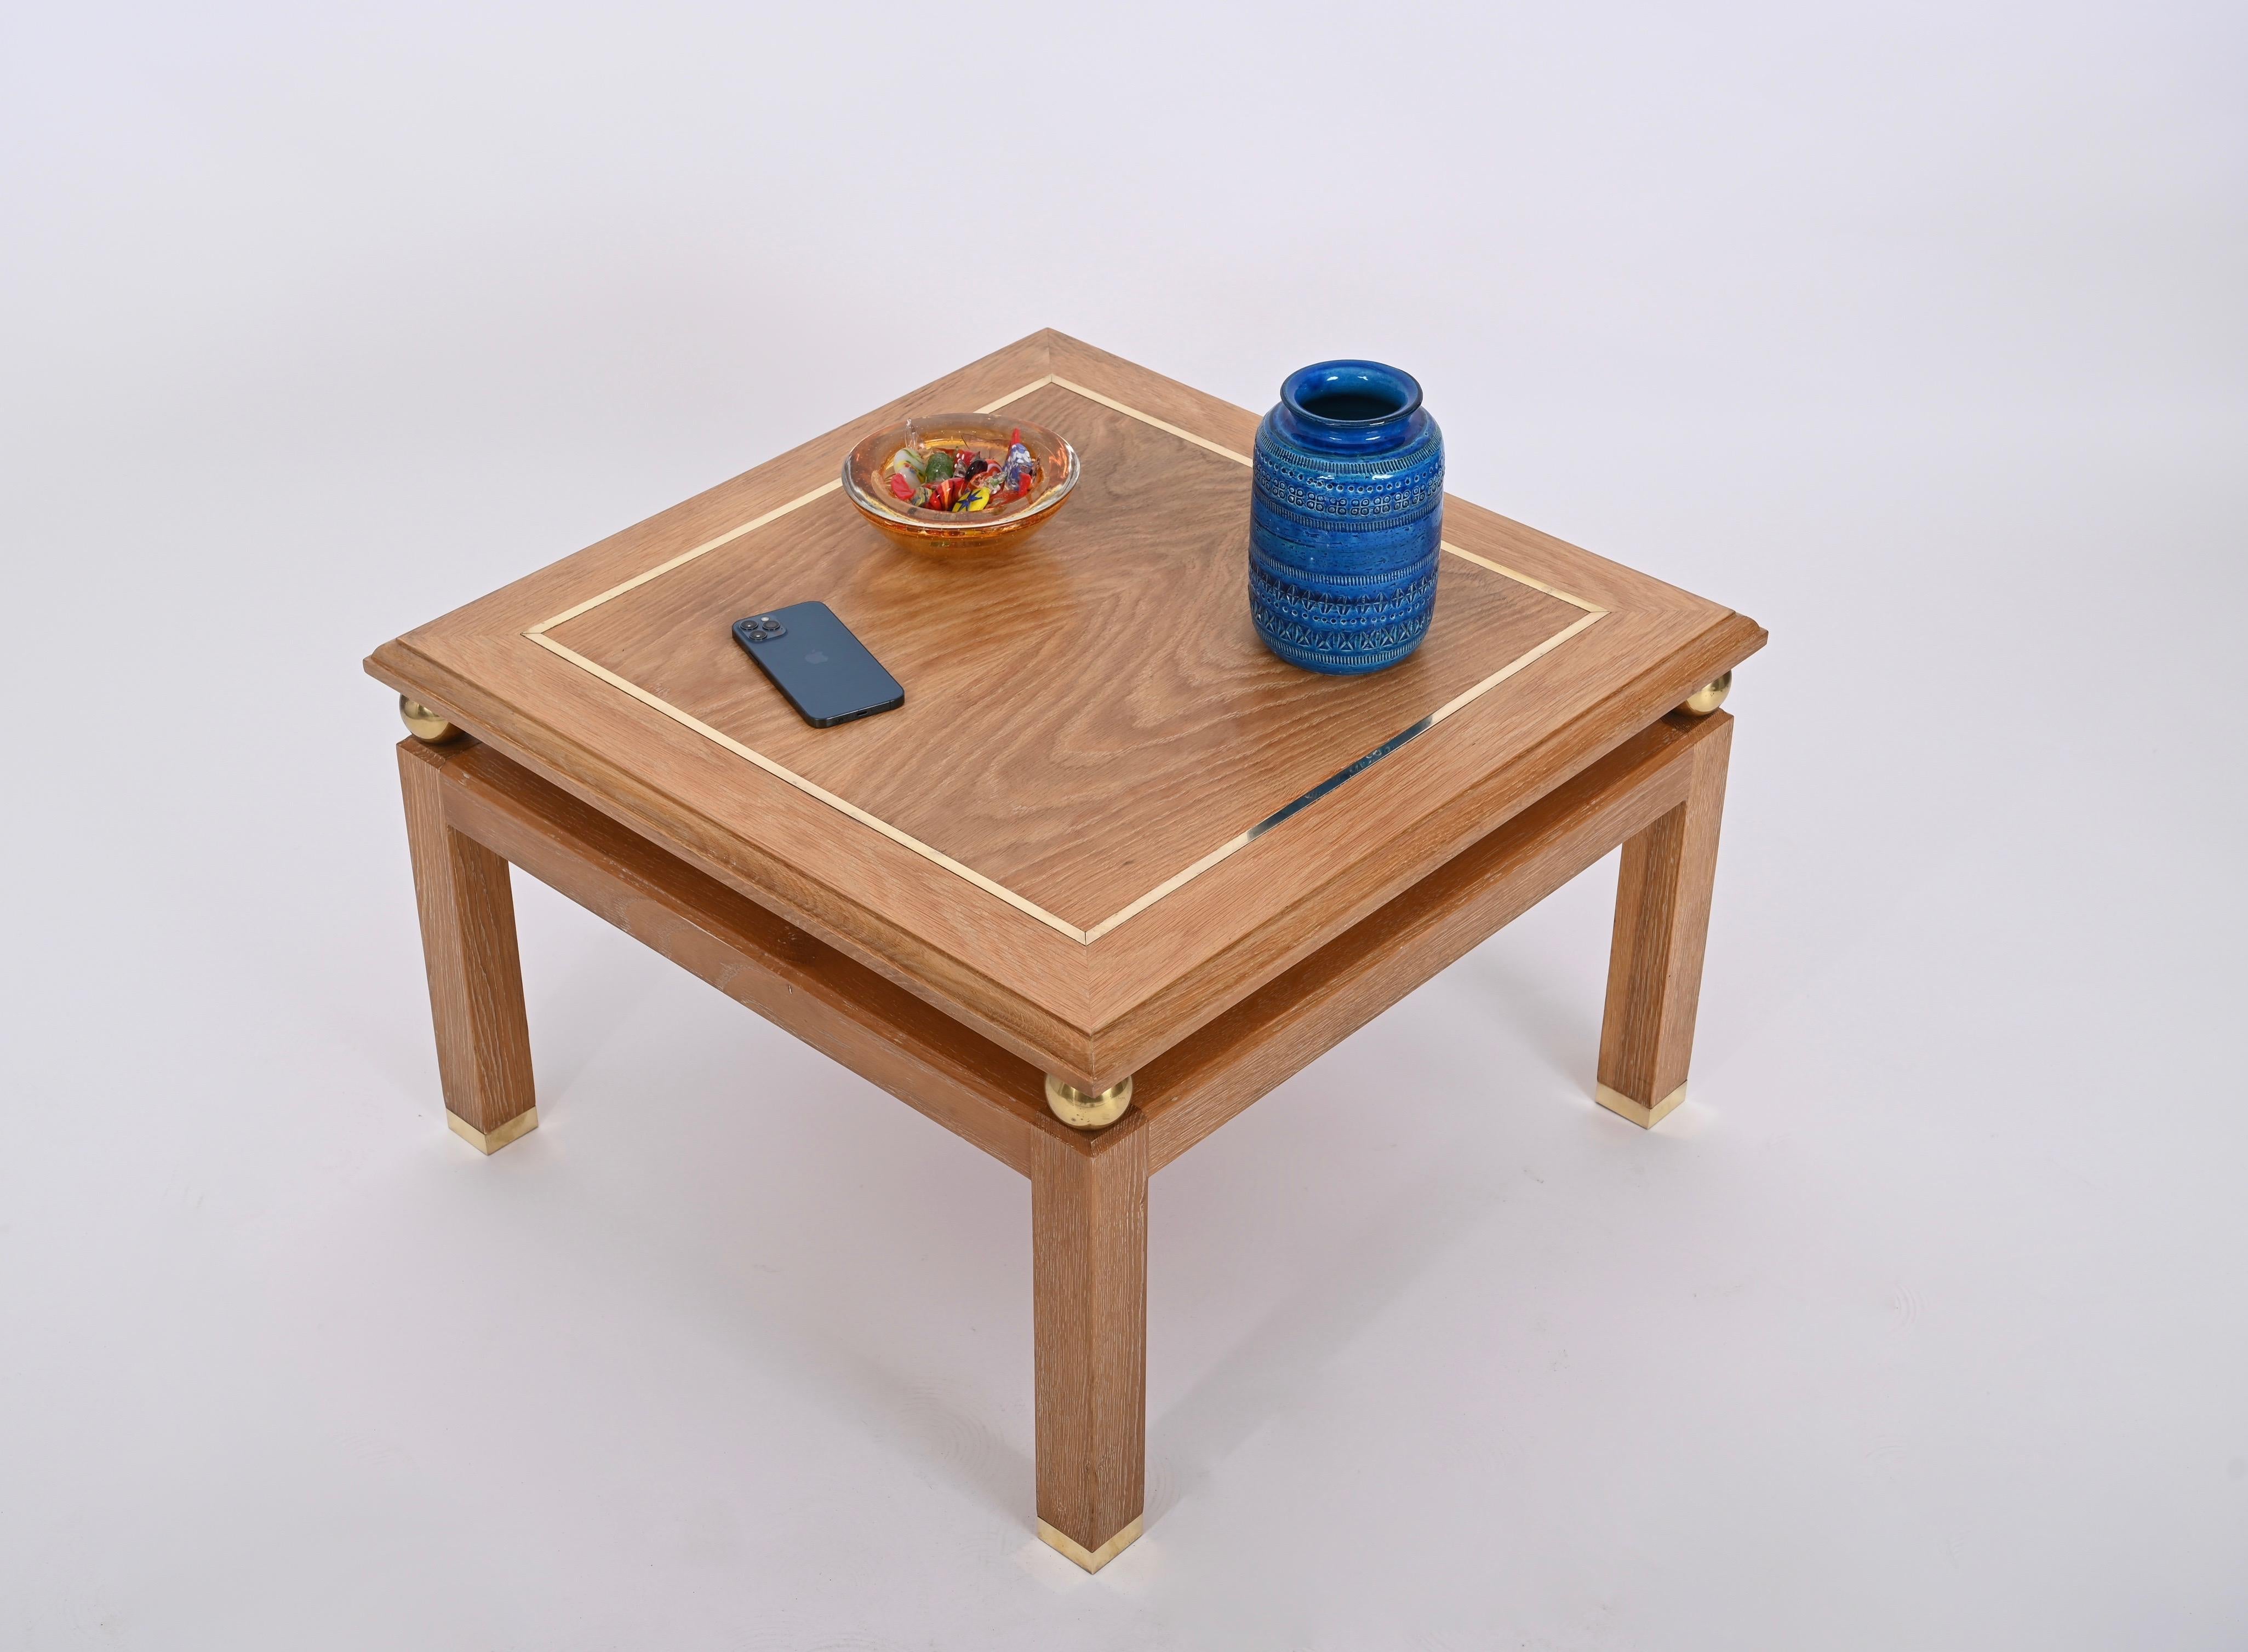 Magnifique table basse carrée en bois de chêne et laiton signée par Tommaso Barbi et produite dans les années 1970 en Italie. 

Cette pièce unique présente une magnifique structure en bois de chêne plaqué et ciré. Le plateau est décoré d'un cadre